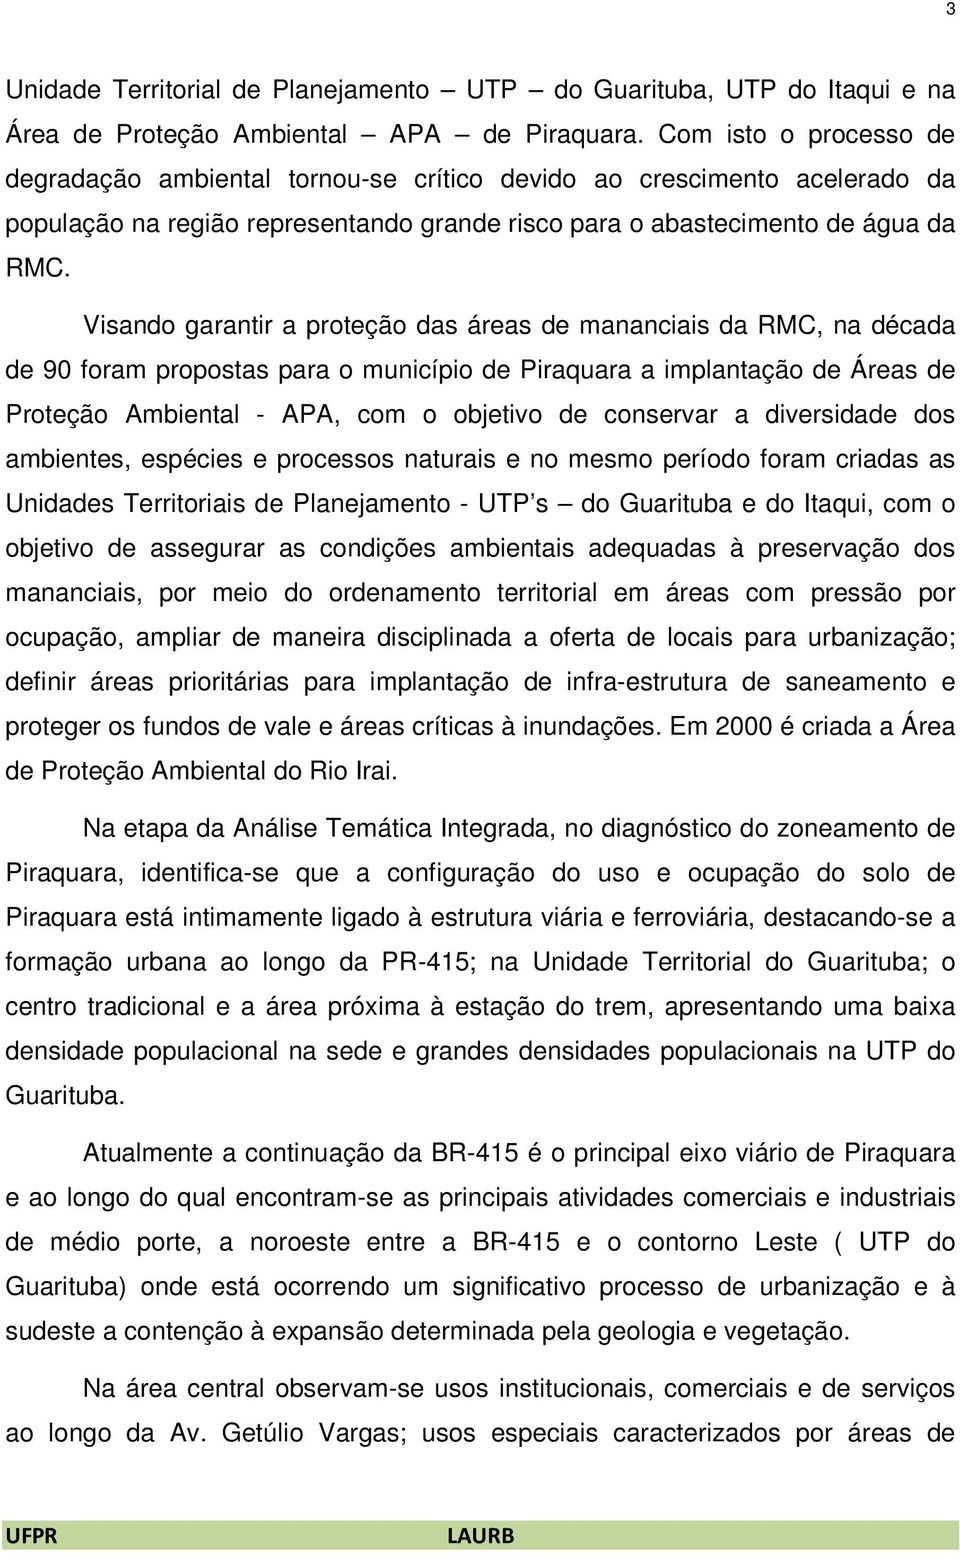 Visando garantir a proteção das áreas de mananciais da RMC, na década de 90 foram propostas para o município de Piraquara a implantação de Áreas de Proteção Ambiental - APA, com o objetivo de